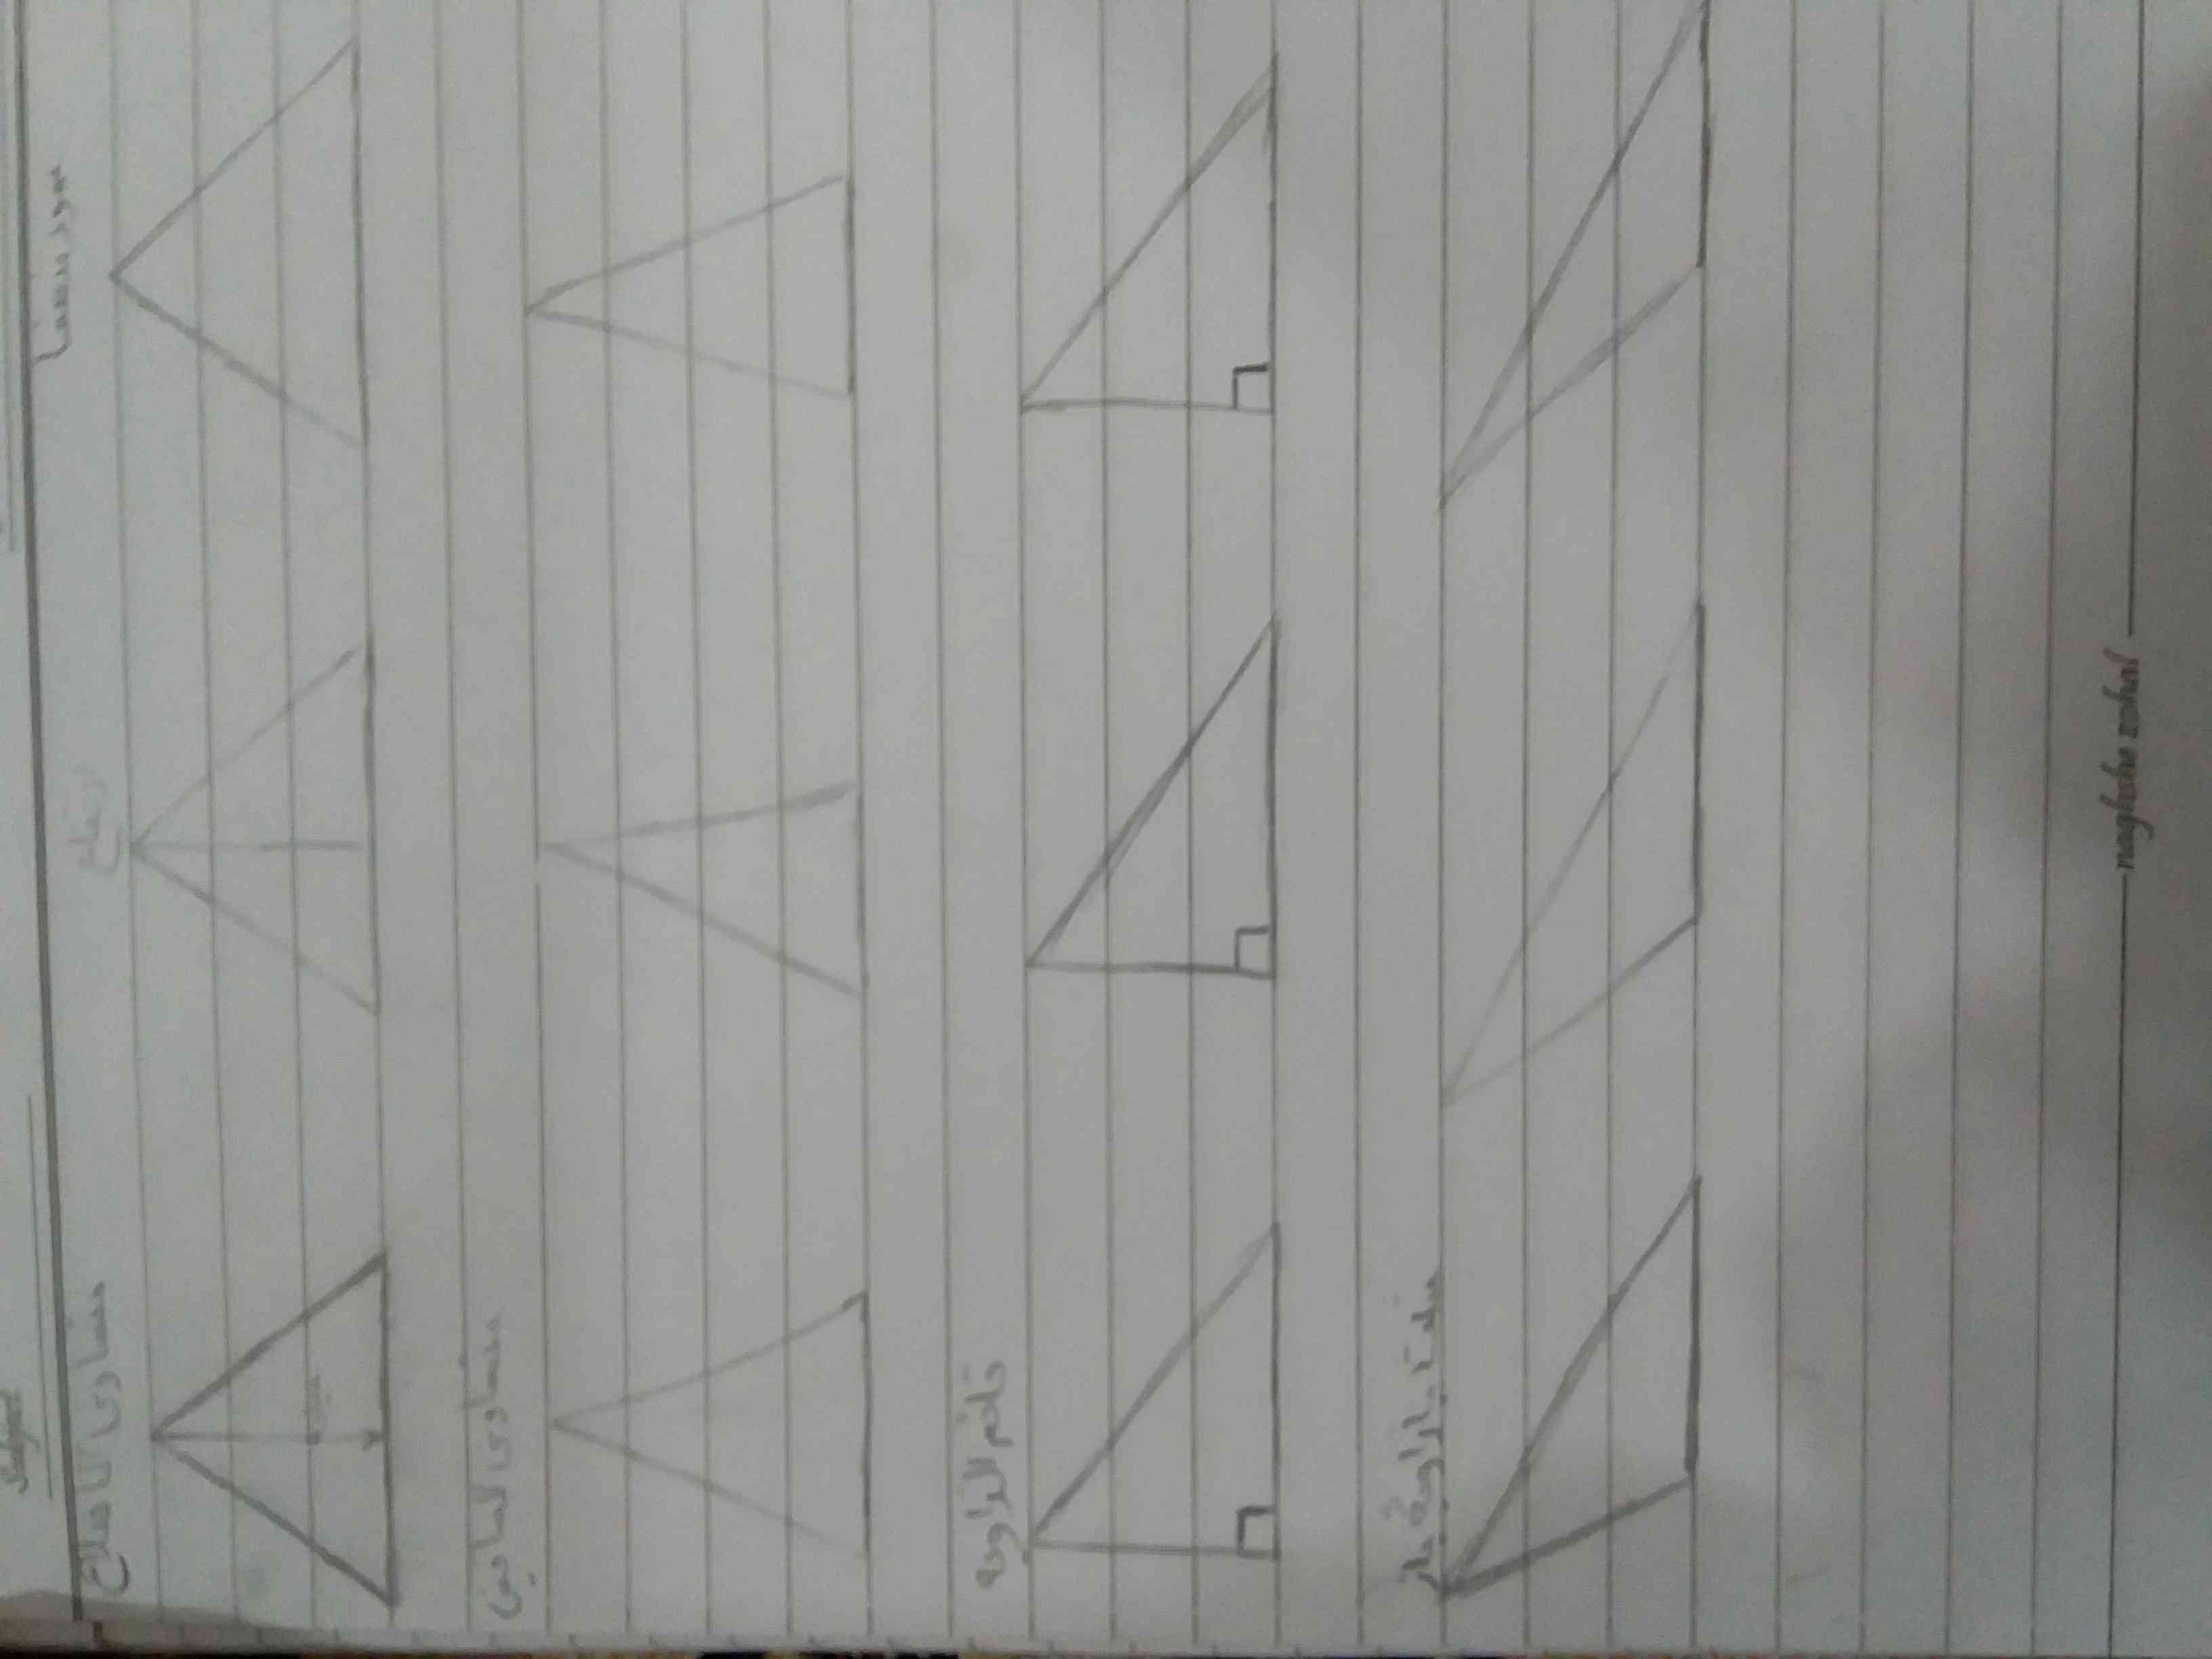 لطفا عمود منصف و ارتفاع  و میانیه هر کدوم از مثلث هارو مشخص کنید